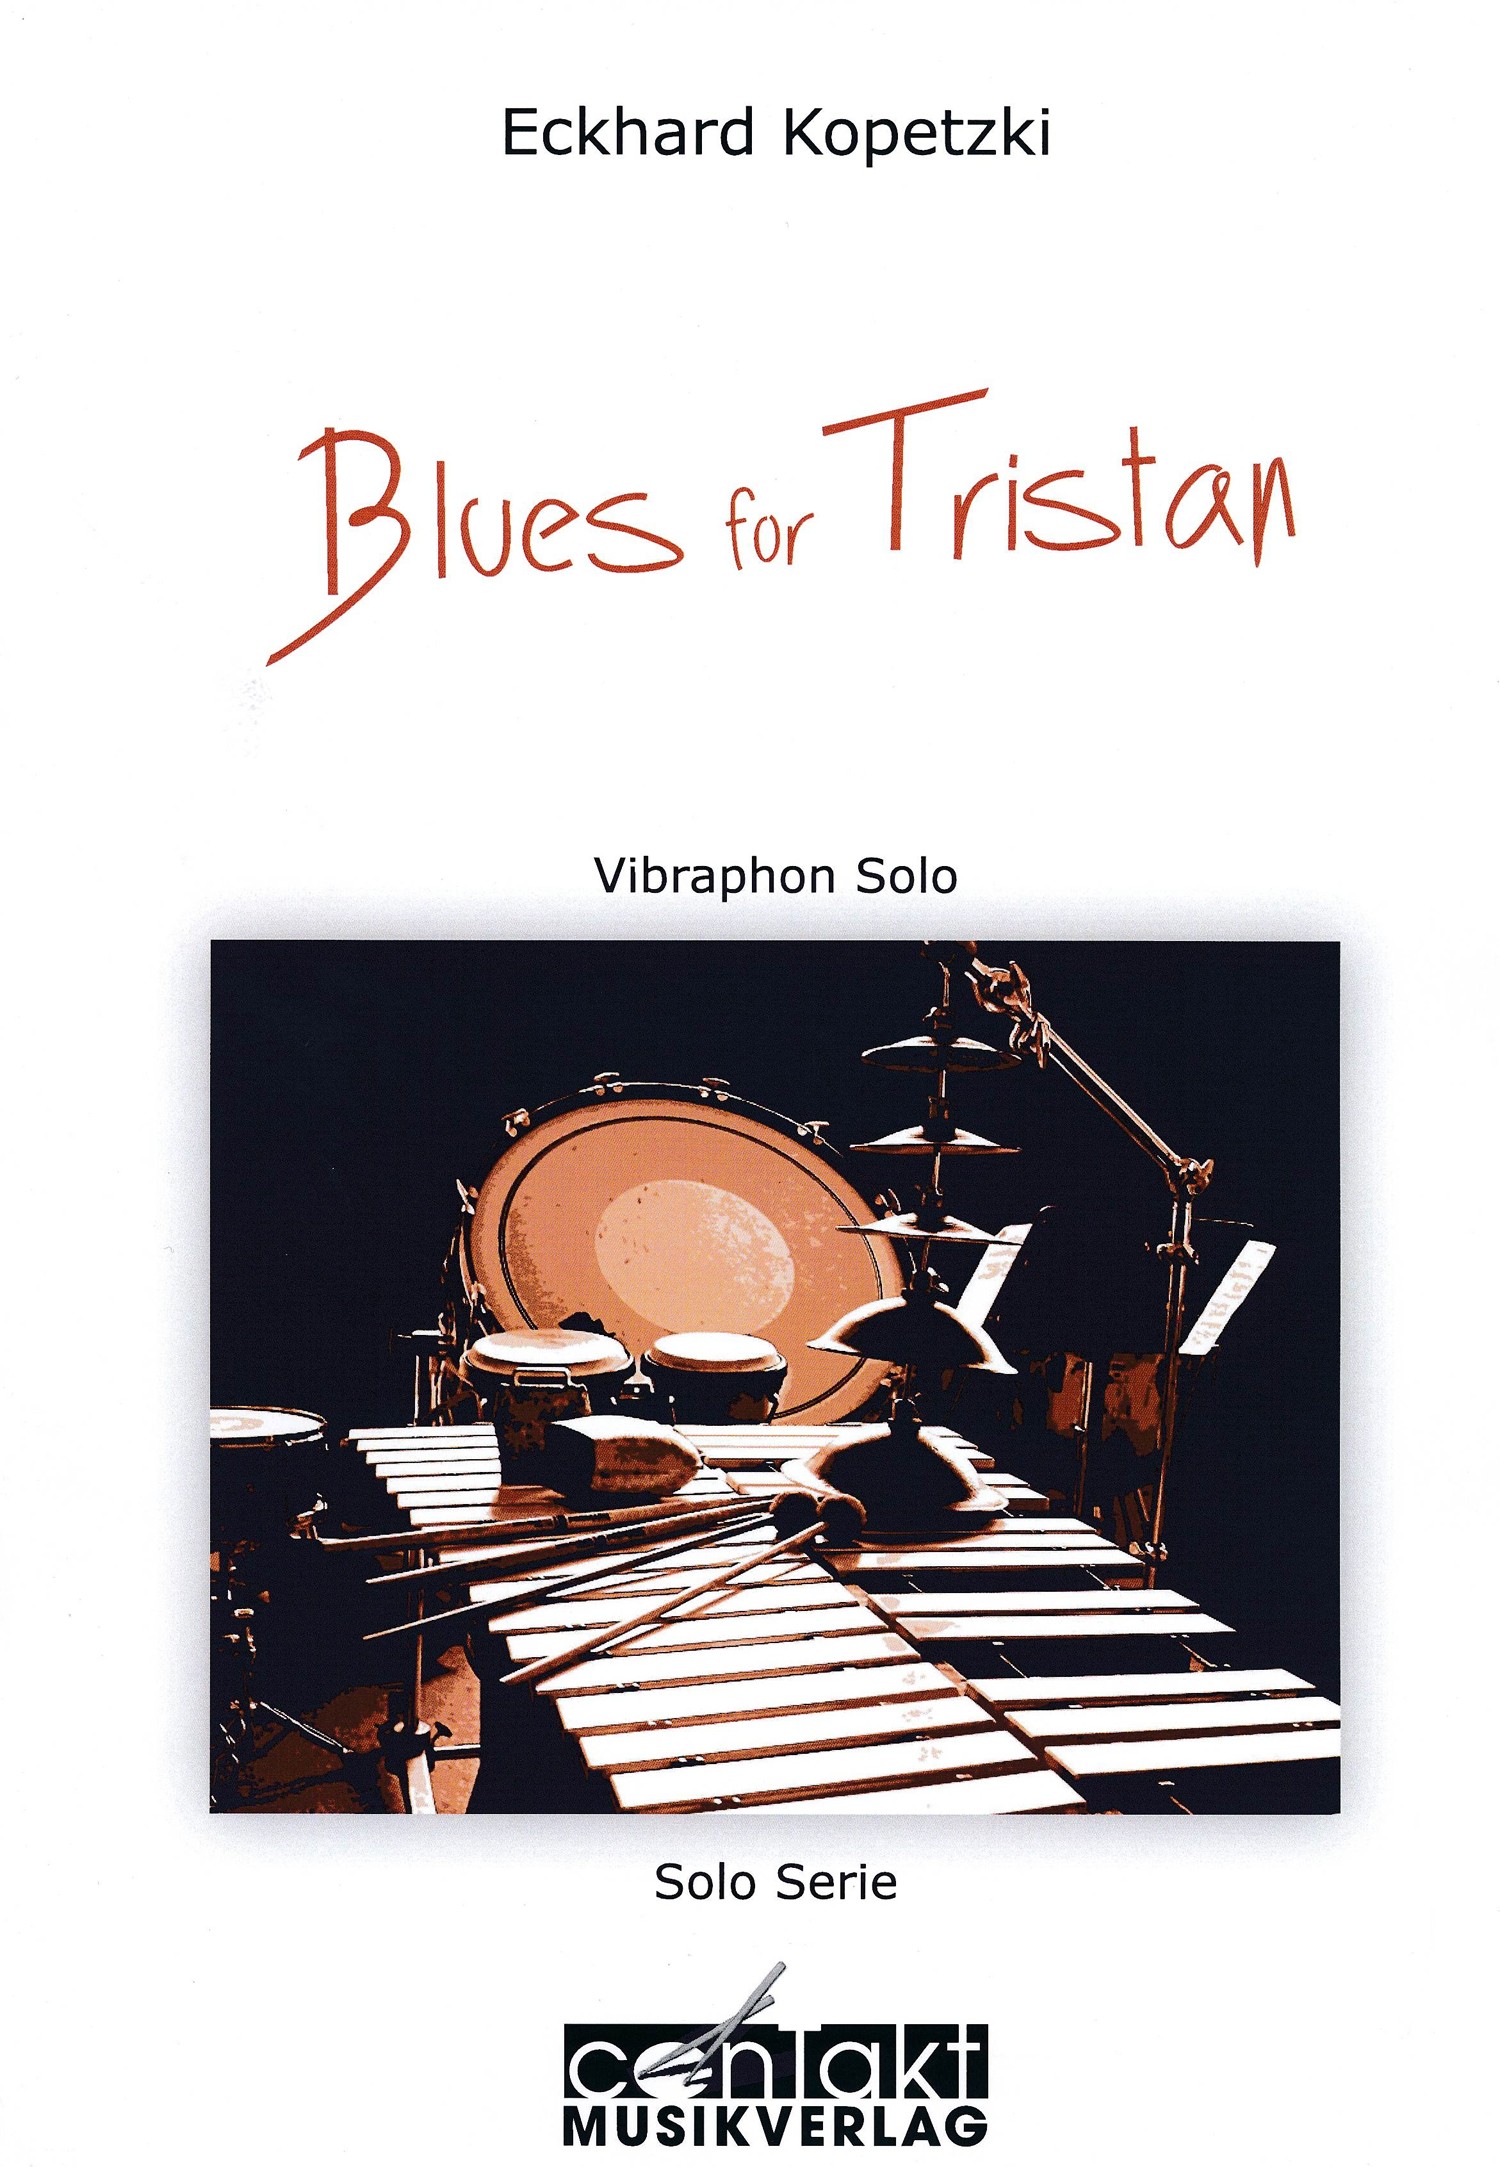 Blues for Tristan by Eckhard Kopetzki